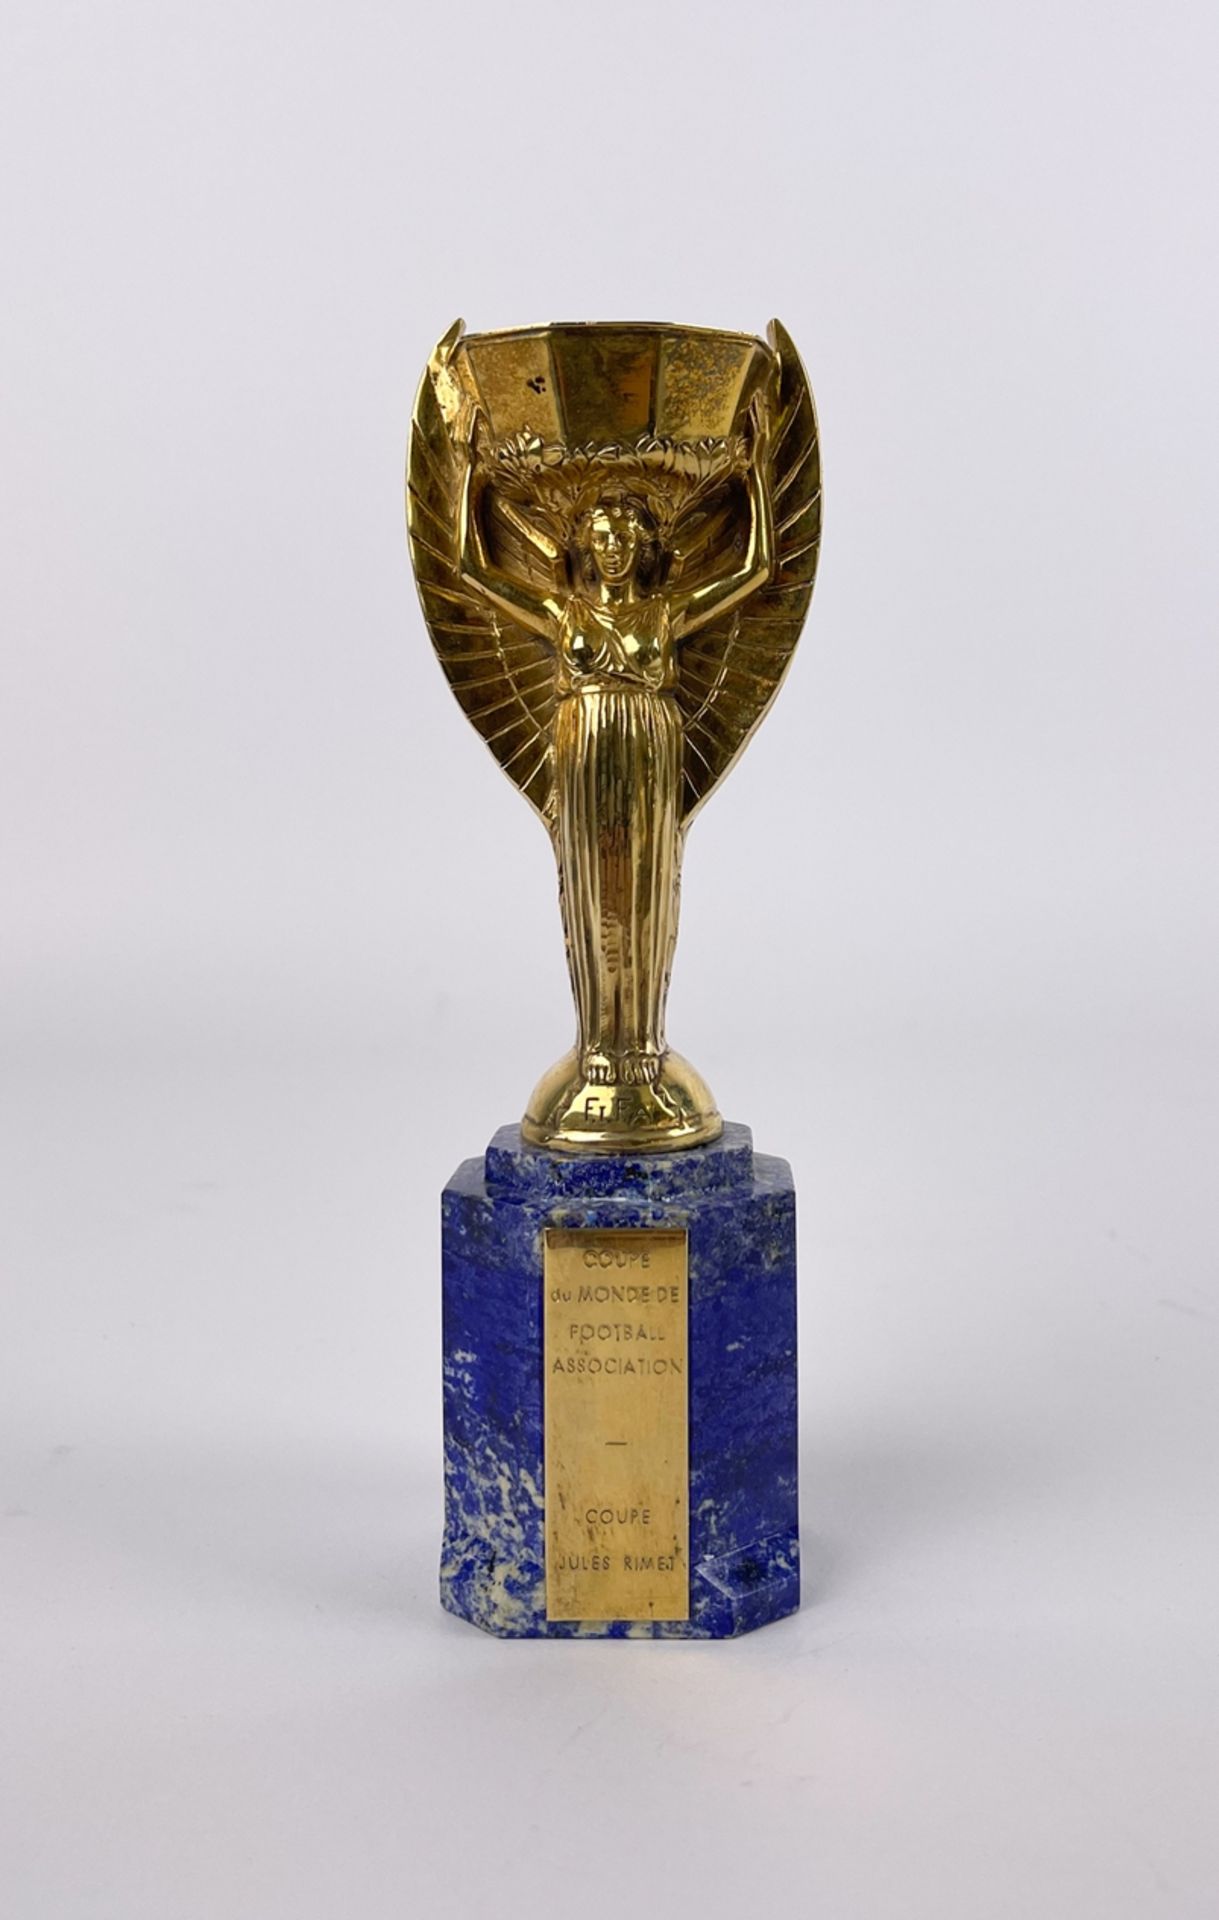 Coupe du Monde de Football Association "Jules Rimet"